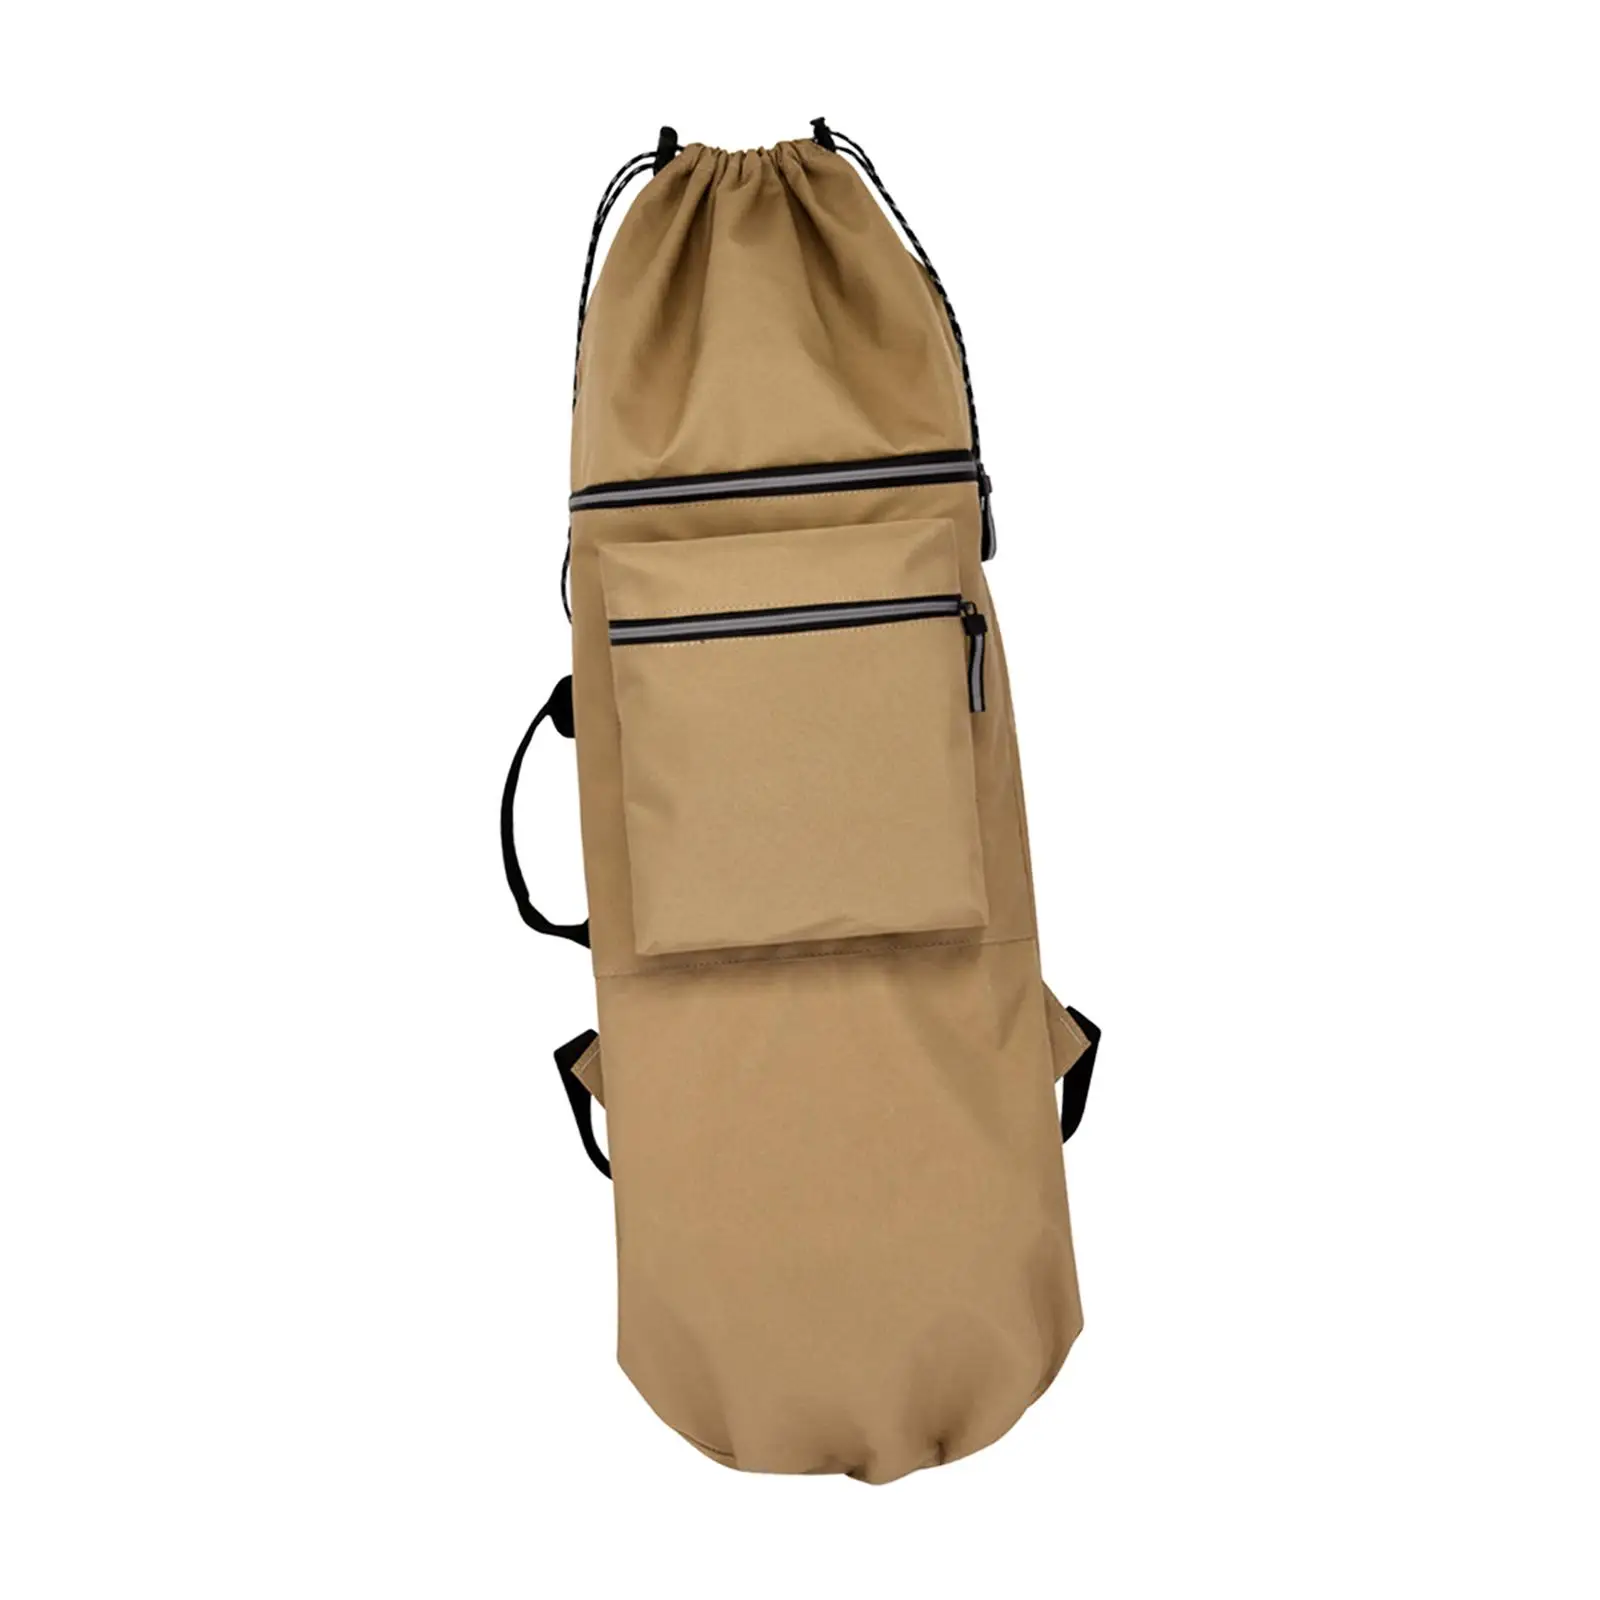 Skateboard Backpack Bag Handbag Carrier Shoulder Bag Folding Storage Longboard